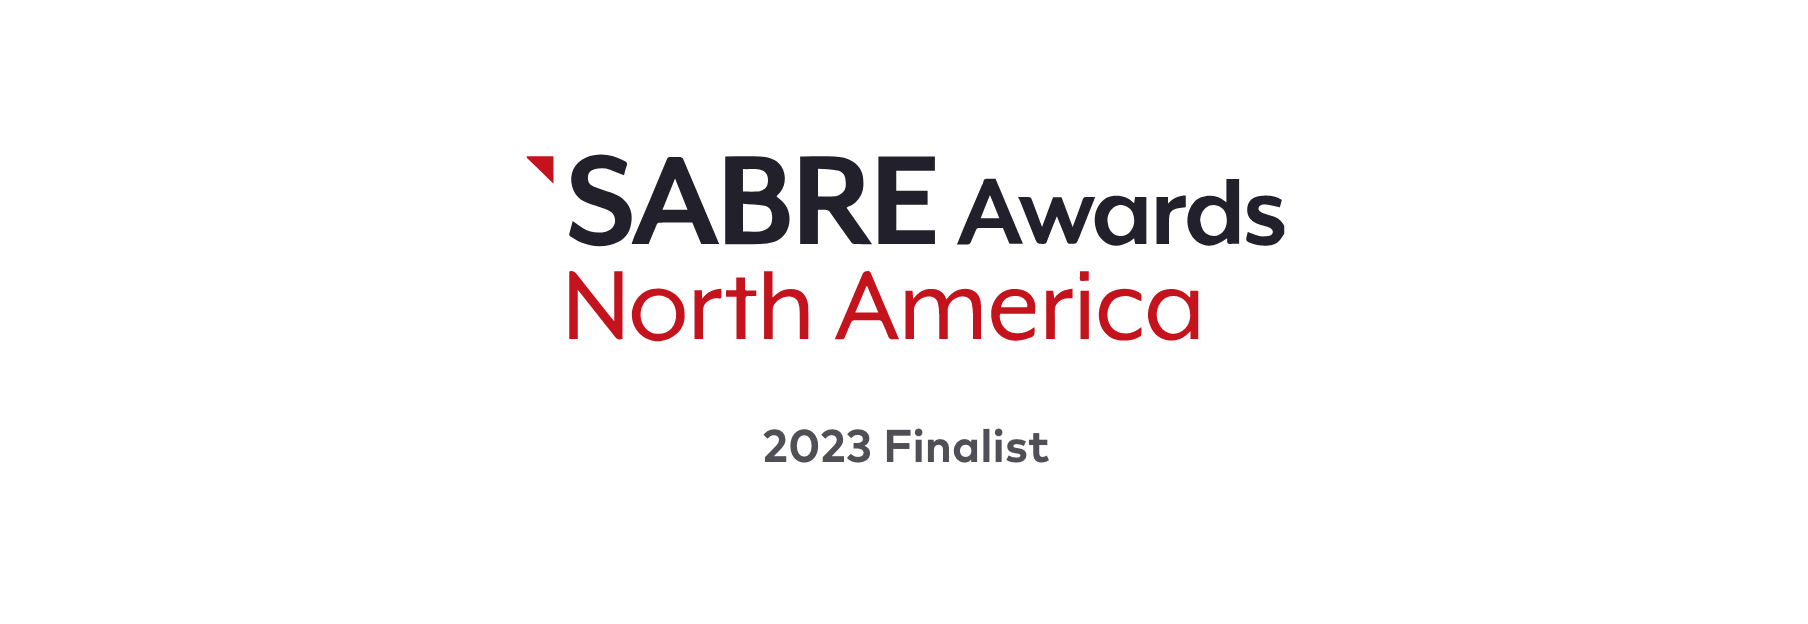 SABRE Awards NA 2023 Finalists